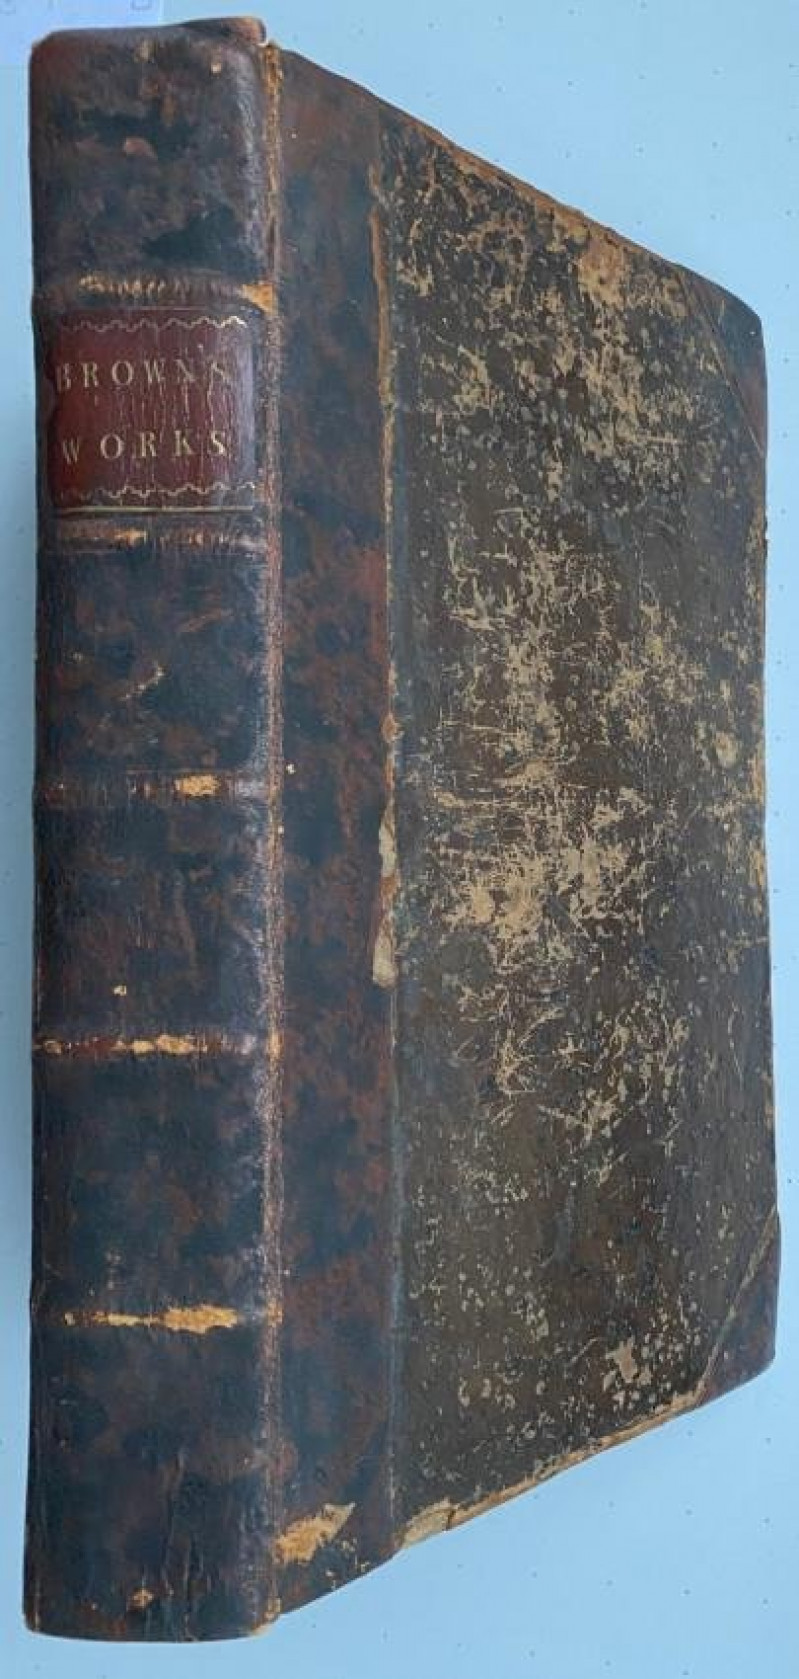 Sir T. BROWNE The Works 1686 [Uriah Heep's copy ?]